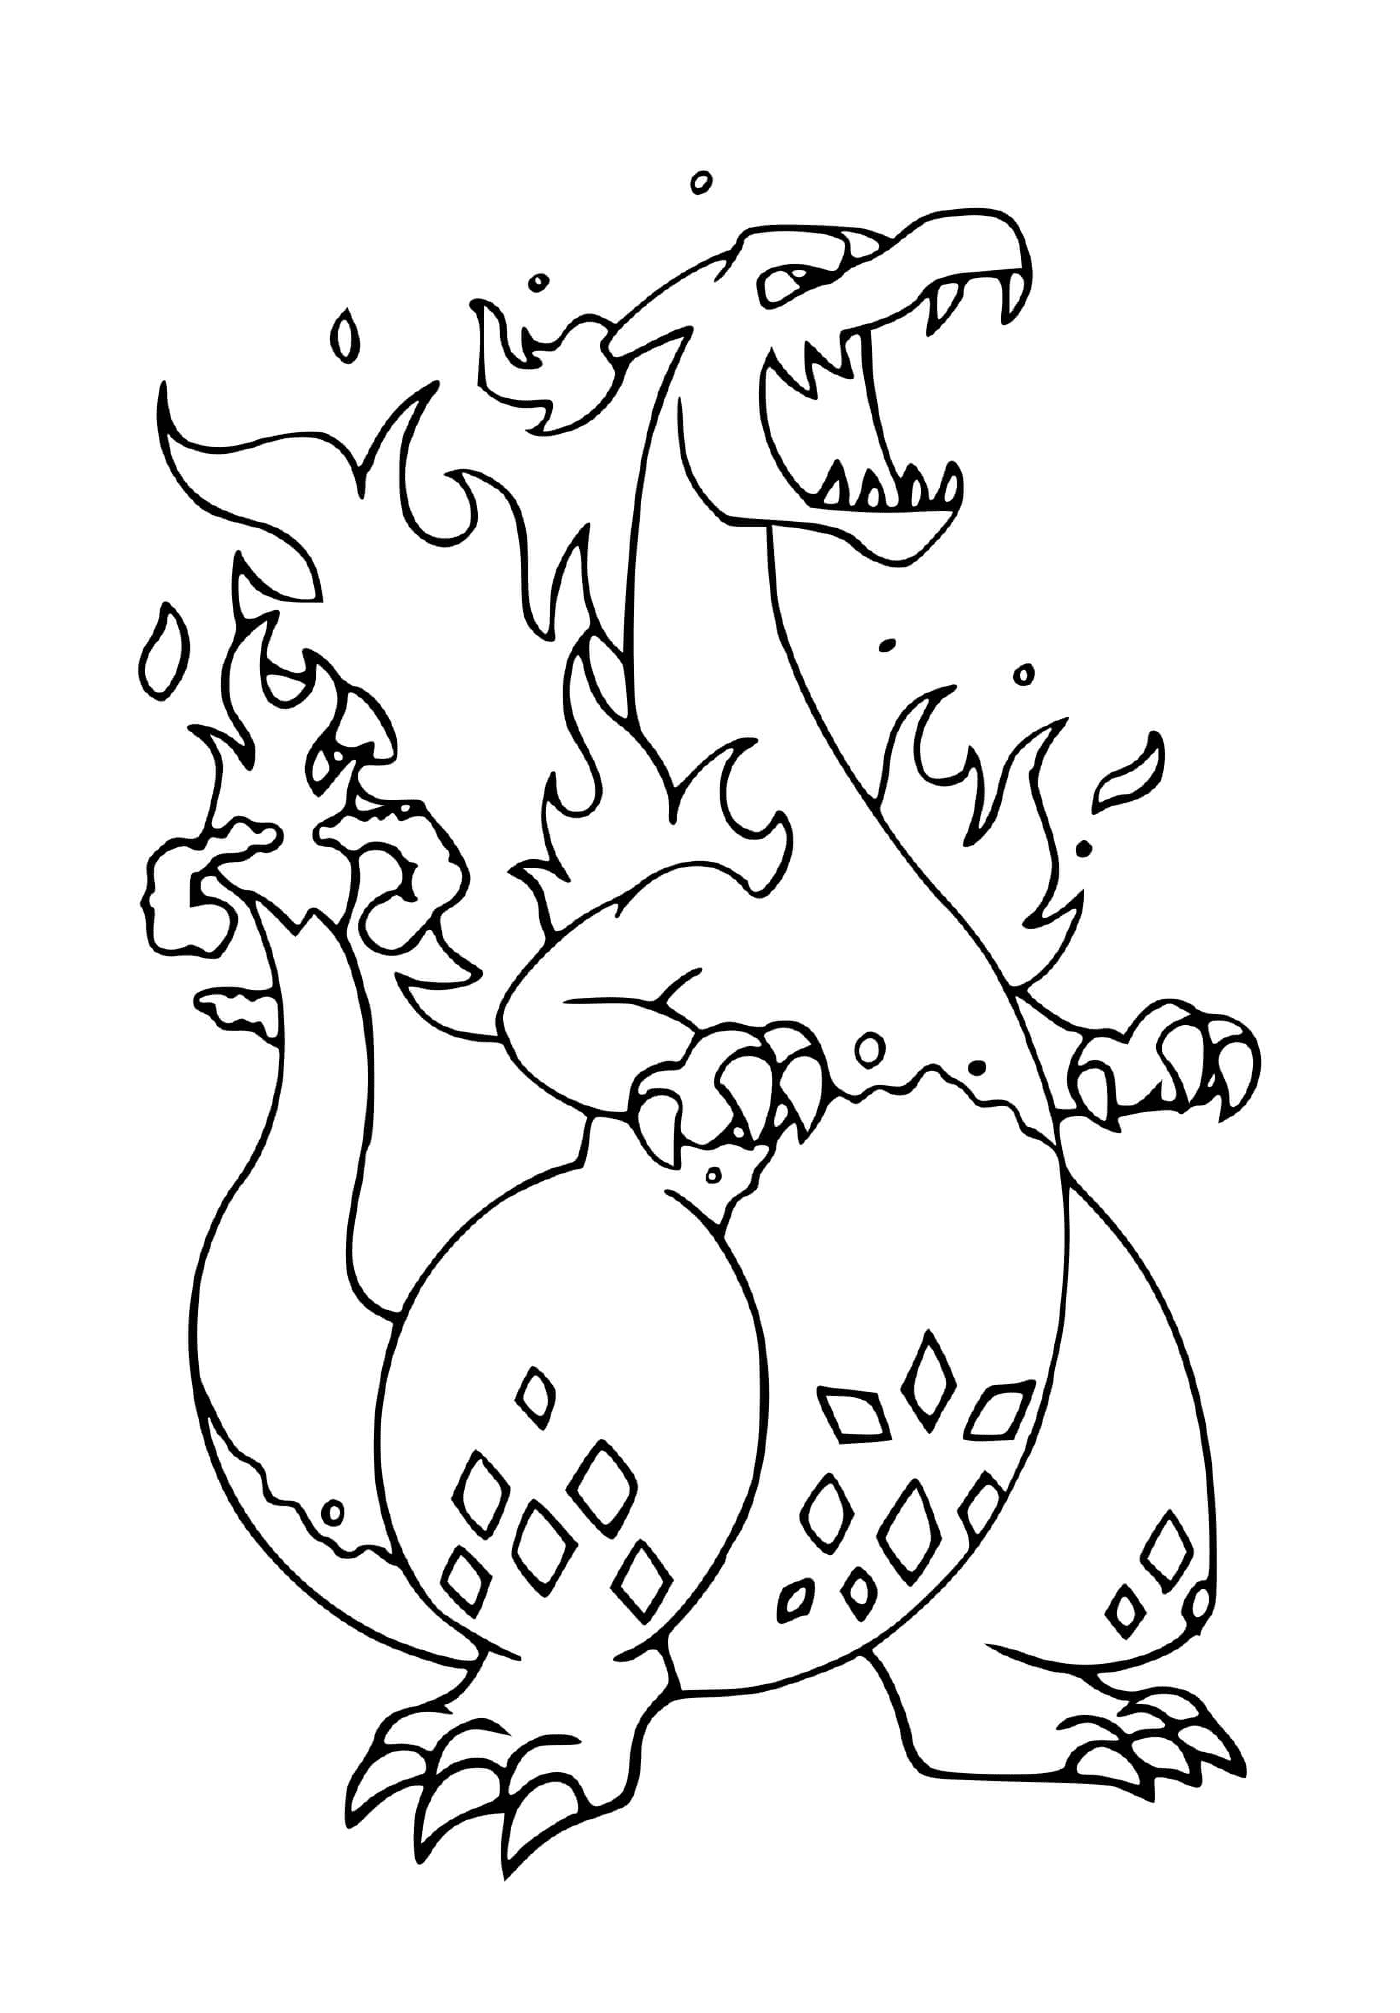  Pokémon fuego con llamas 